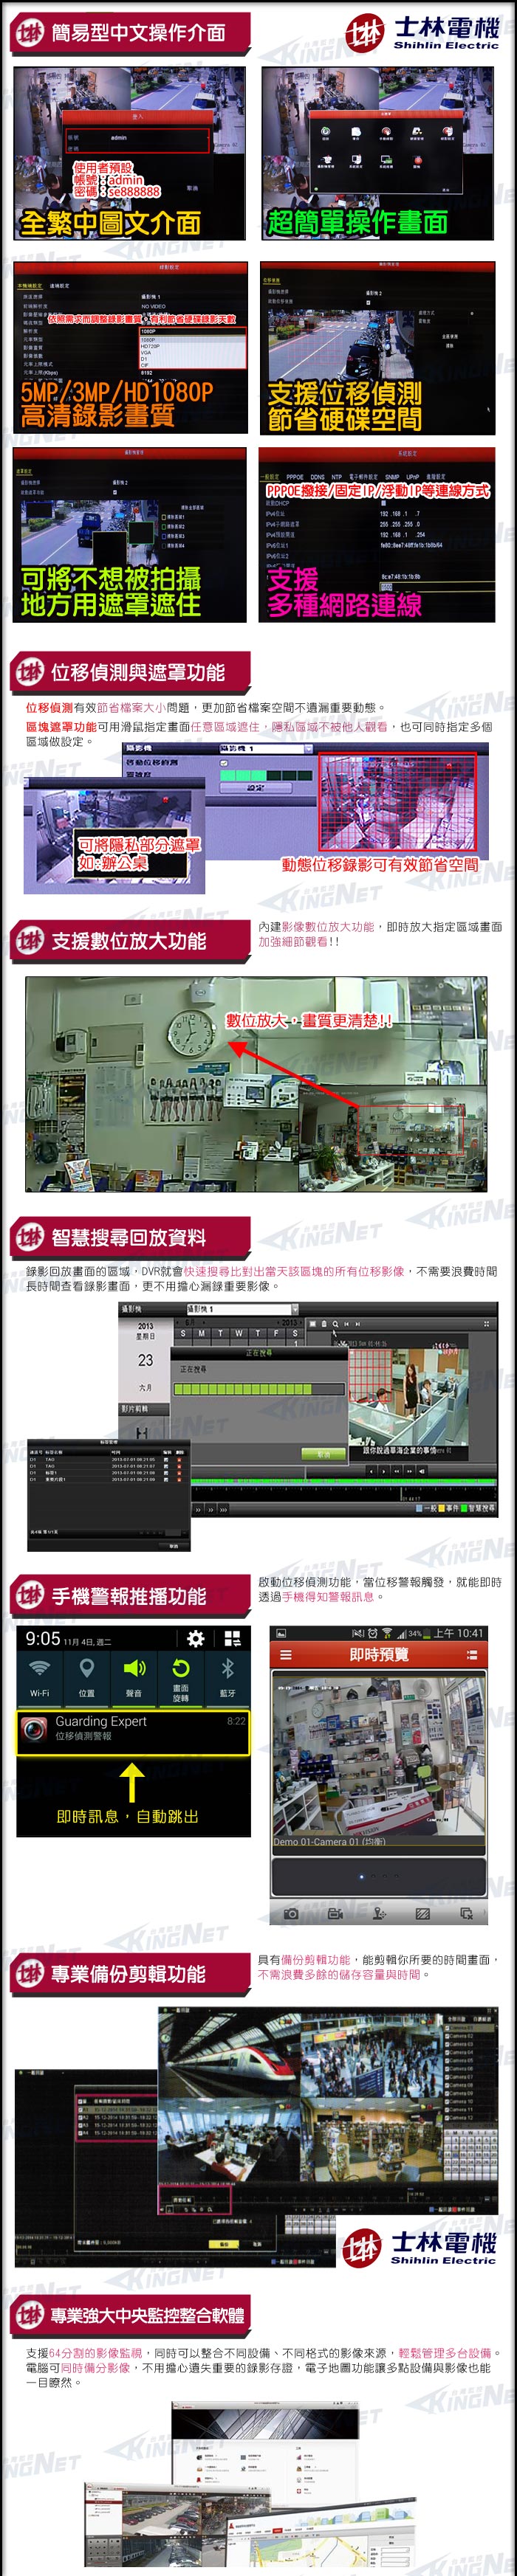 監視器攝影機 KINGNET 士林電機 8路監控主機套餐 高清監控主機+4陣列室內半球OSD監控攝影機x8